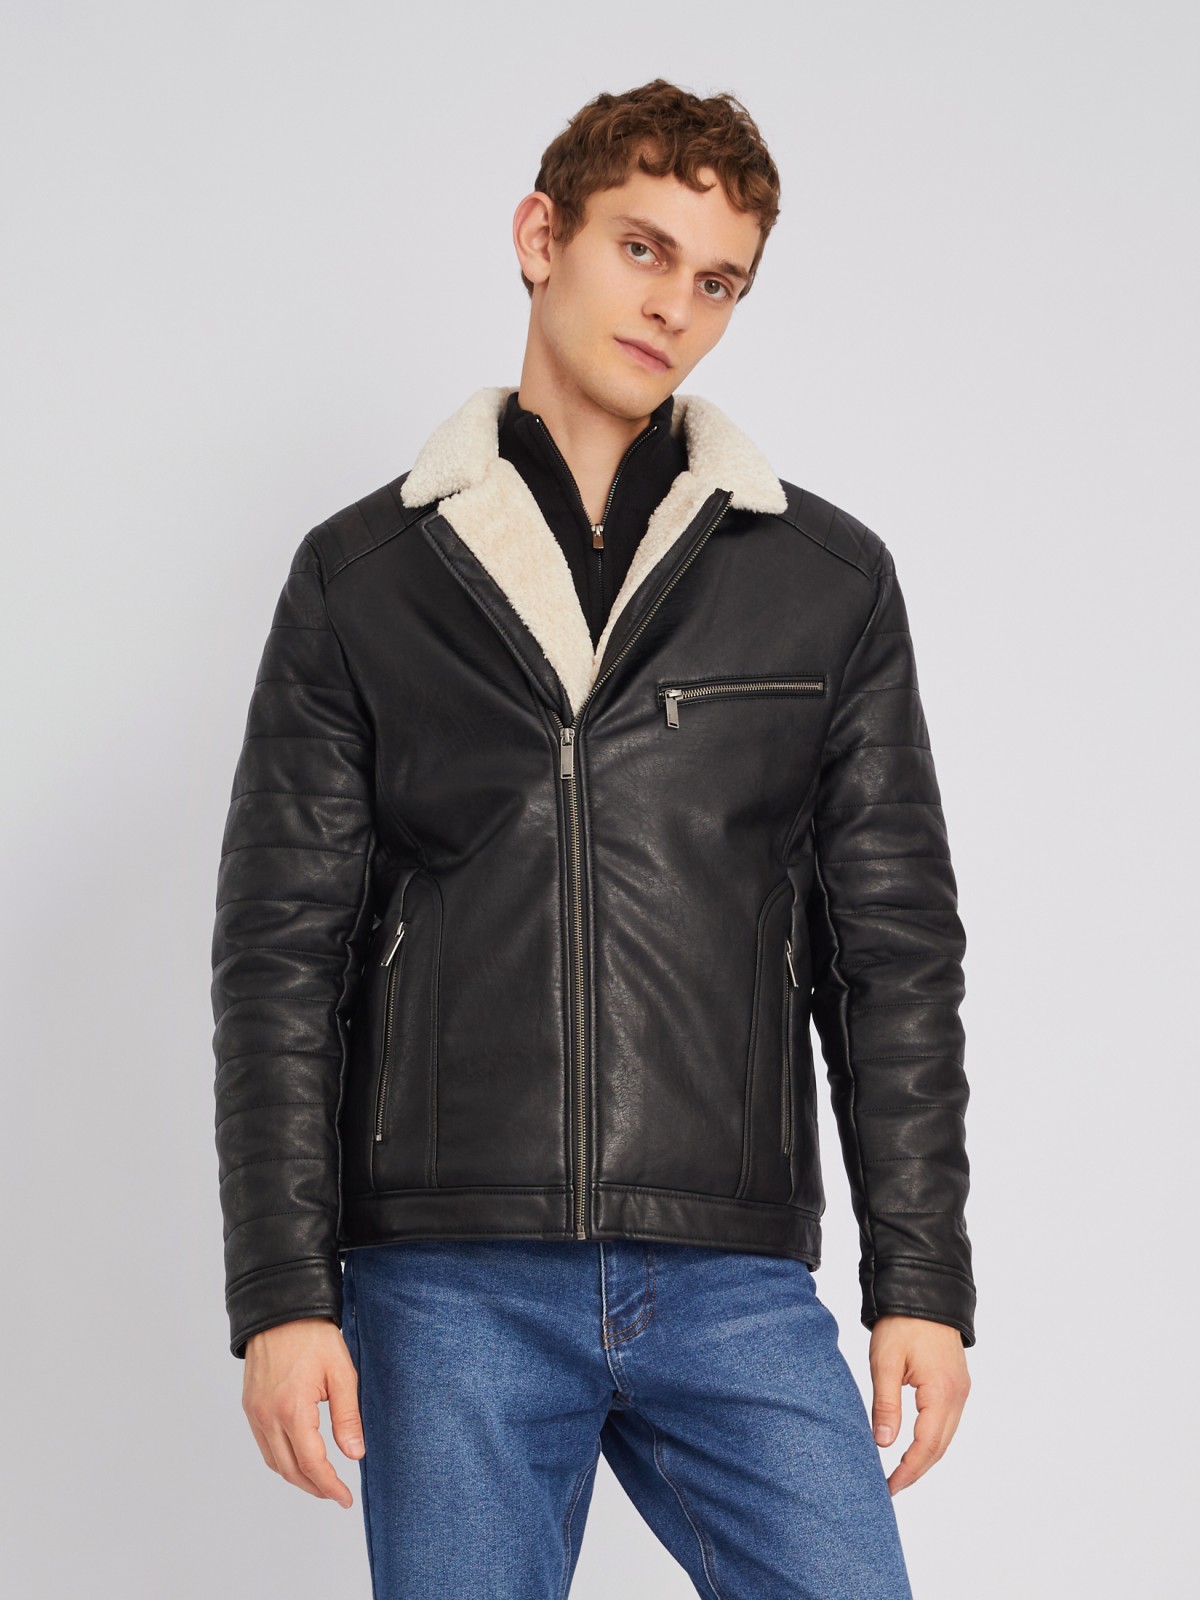 Тёплая куртка-косуха из экокожи с подкладкой из экомеха на синтепоне zolla 012345150154, цвет черный, размер L - фото 1